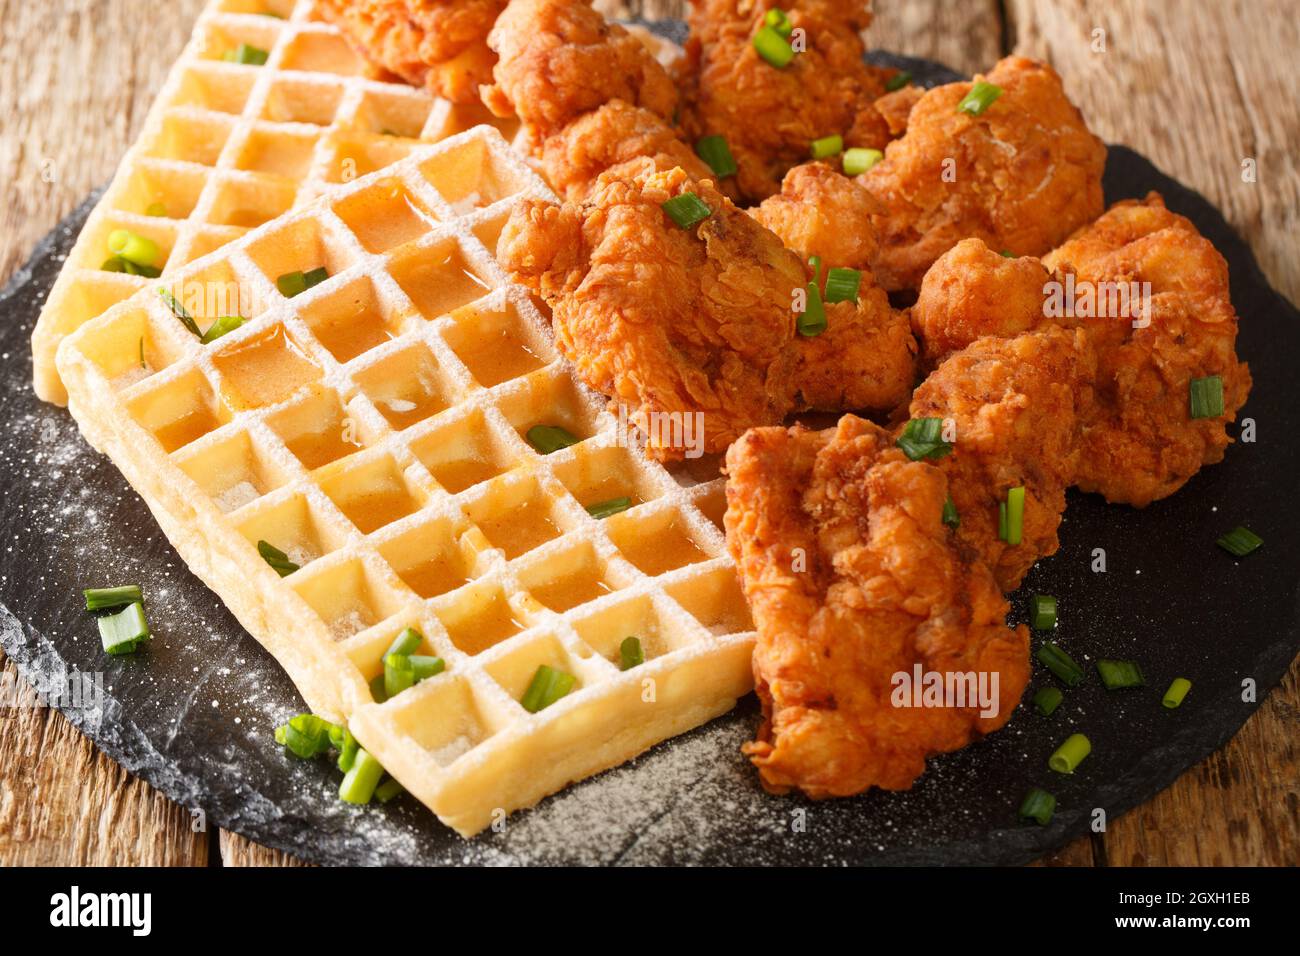 Il pollo e i waffle fatti in casa sono un piatto di soul food che tutti amano da vicino nel piatto di ardesia sul tavolo. Orizzontale Foto Stock